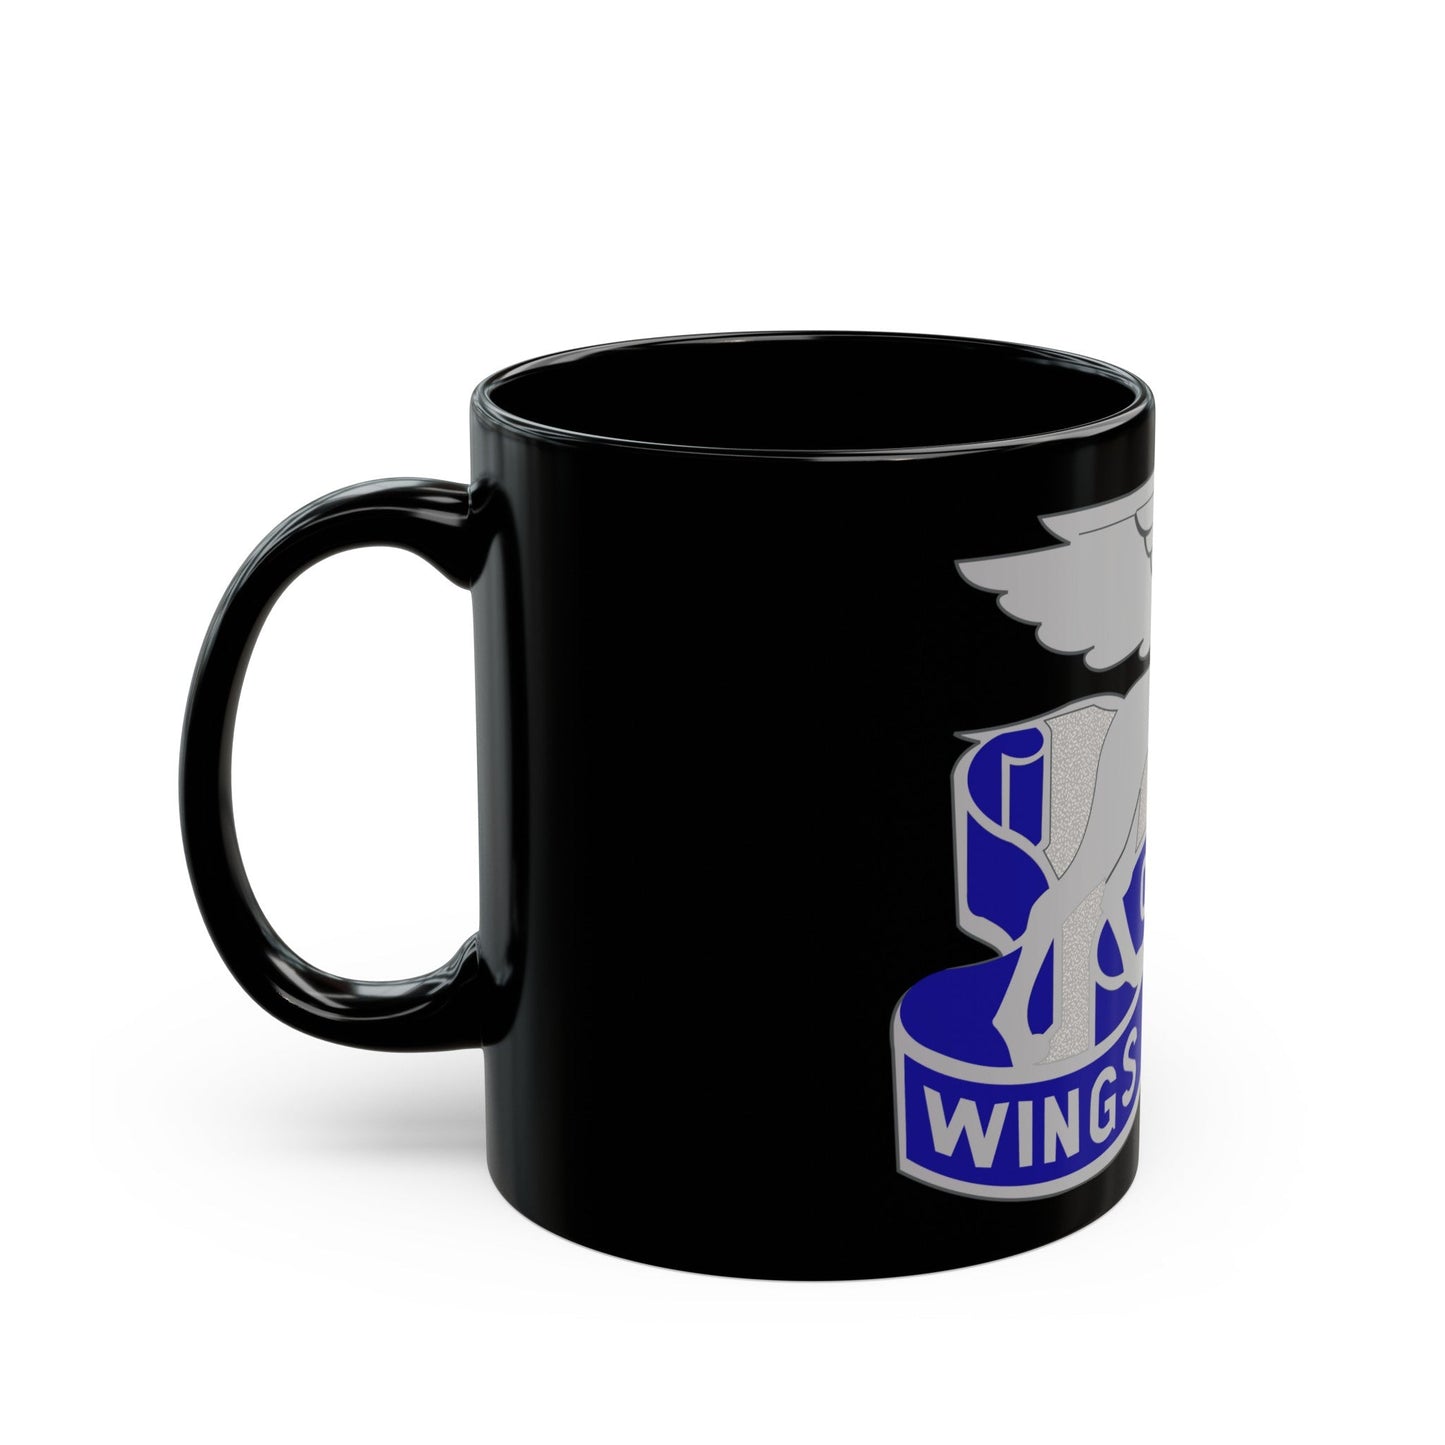 130 Aviation Battalion (U.S. Army) Black Coffee Mug